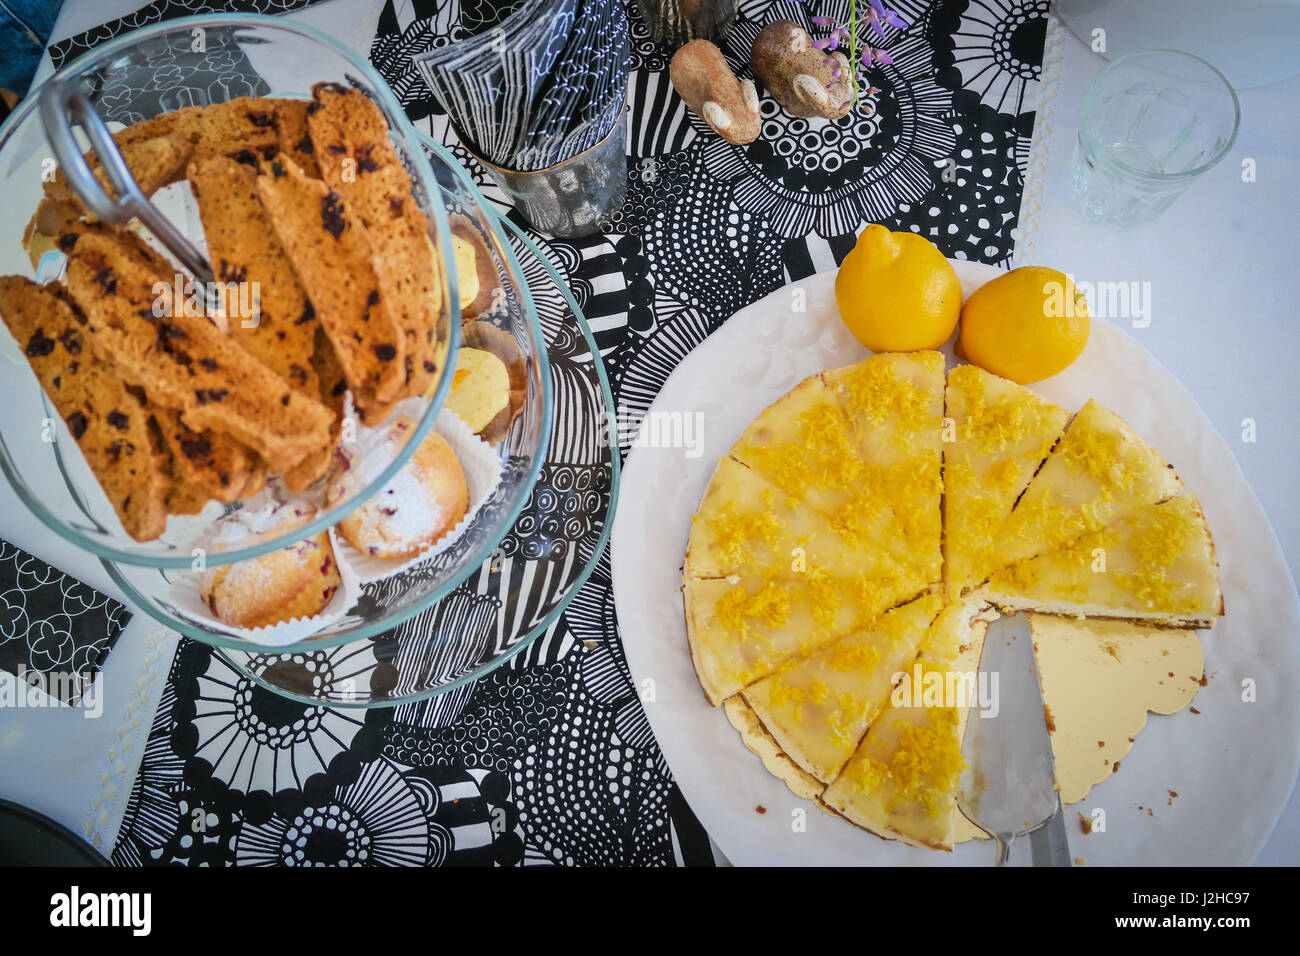 Tabella di dessert con biscotti al cioccolato e cheesecake su bianco che serve piatti Foto Stock